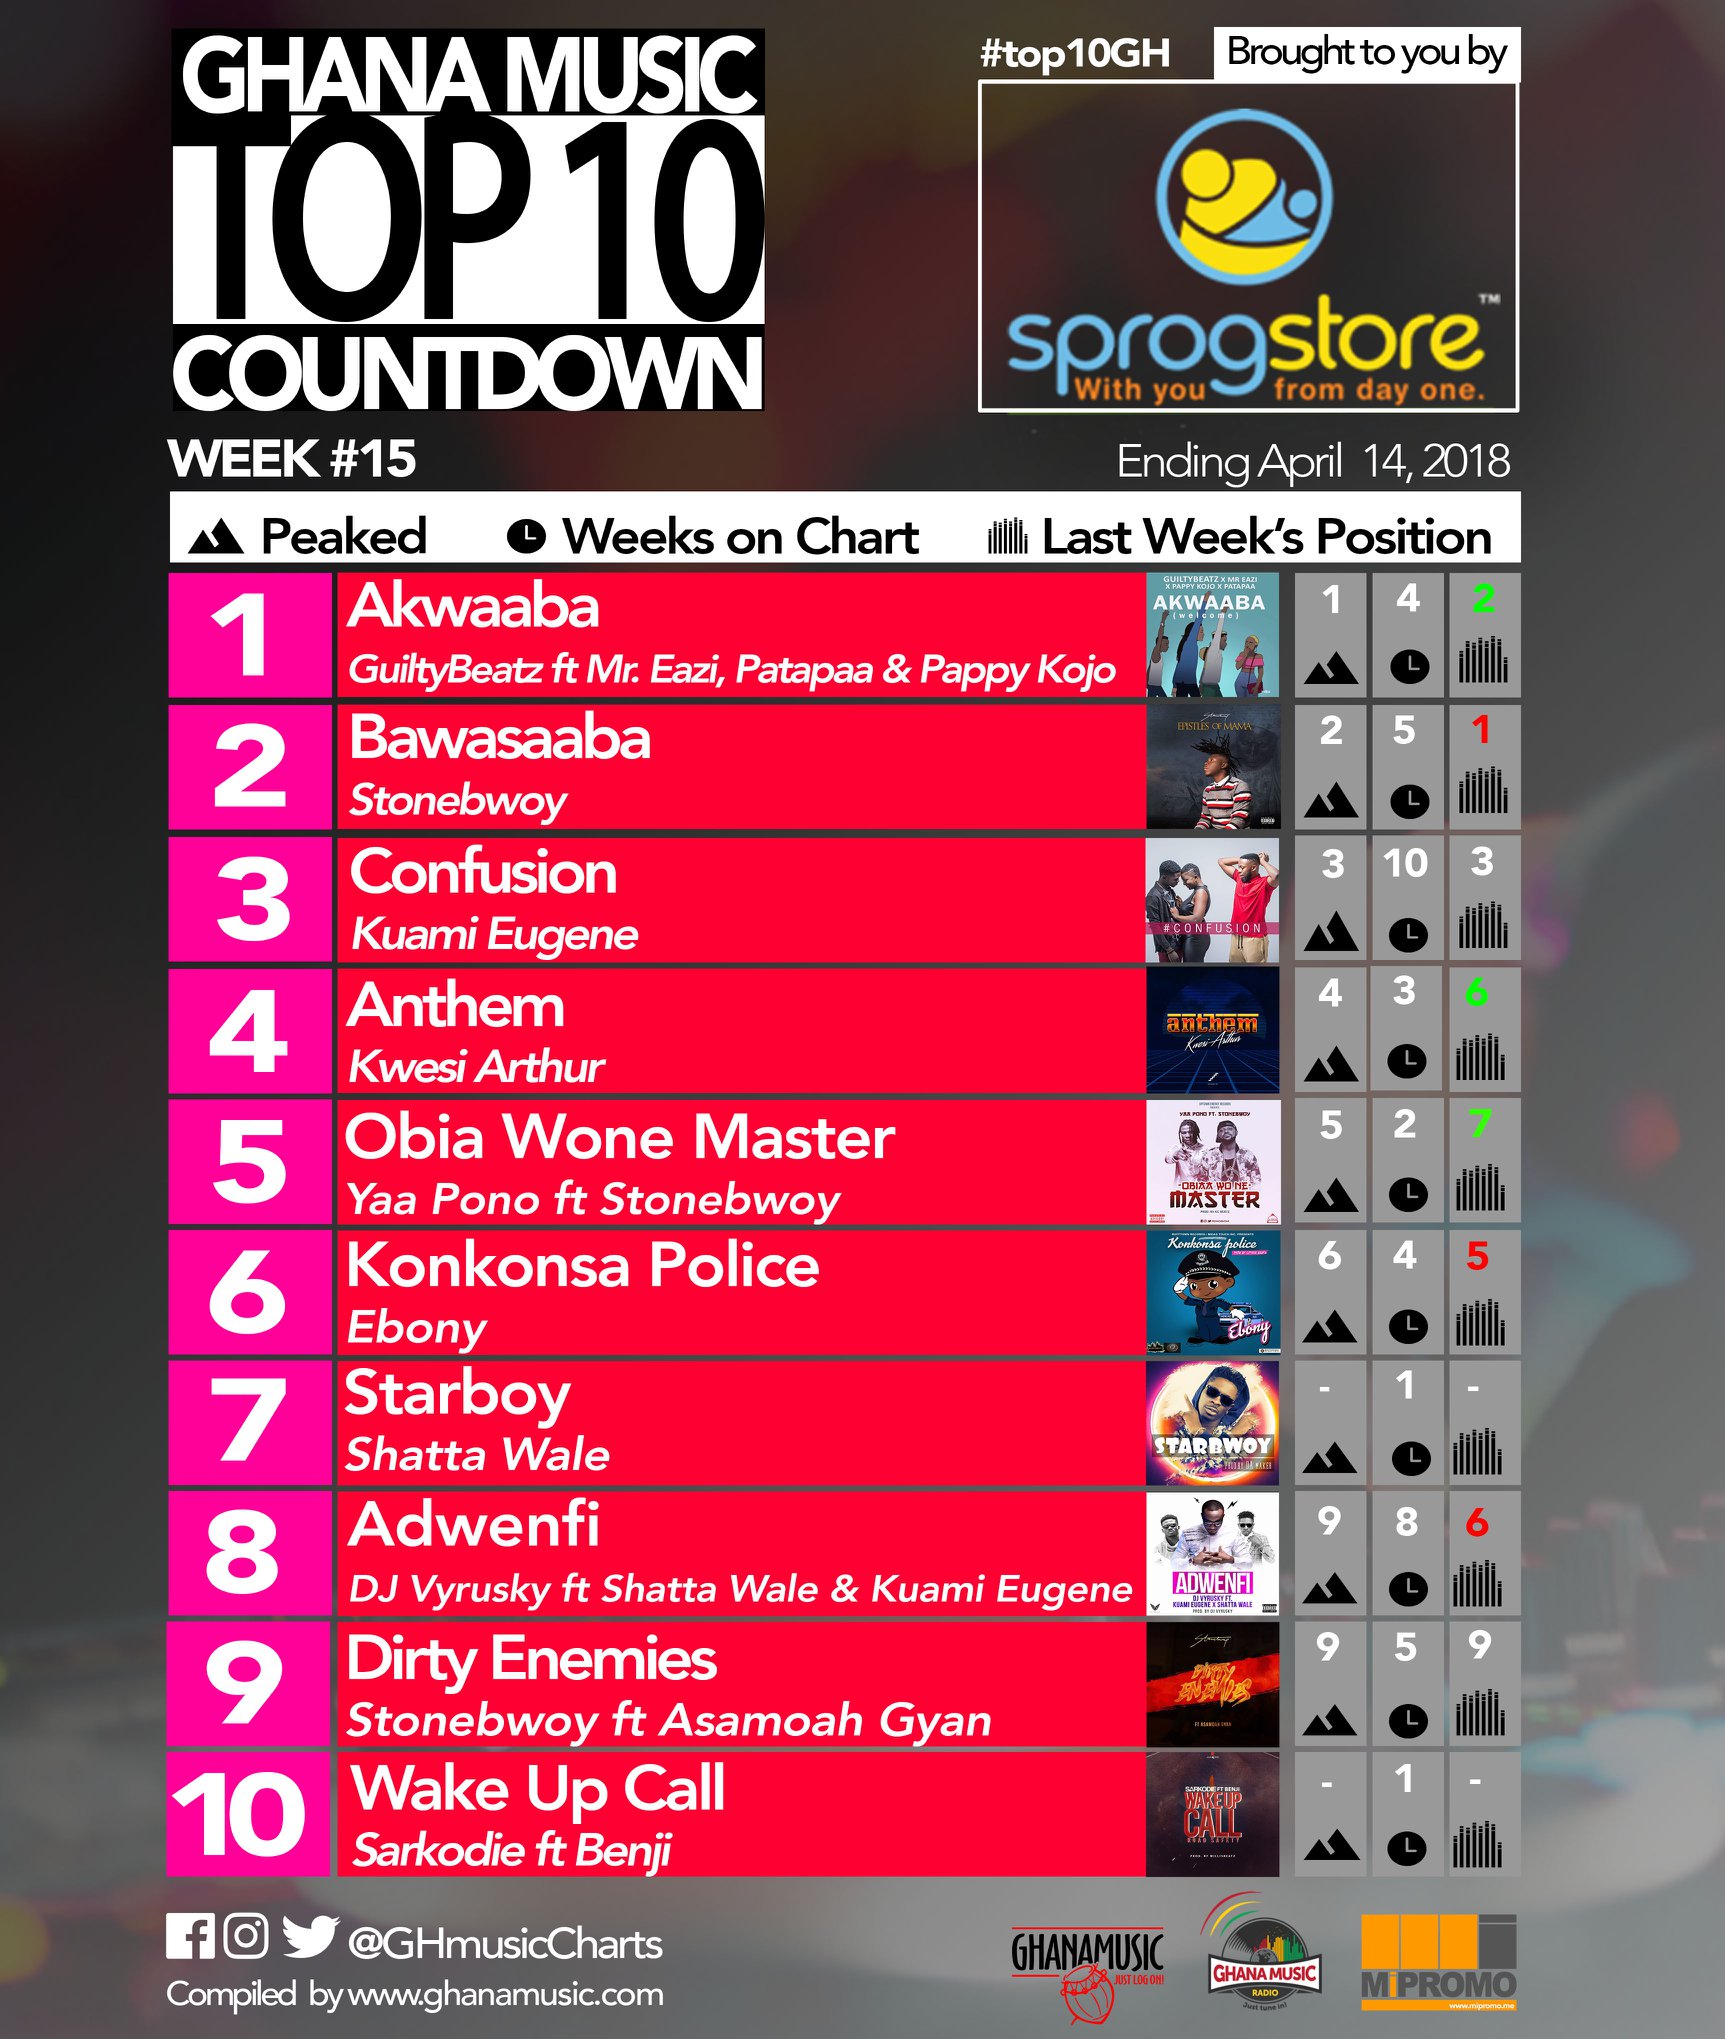 Week #15: Ghana Music Top 10 Countdown